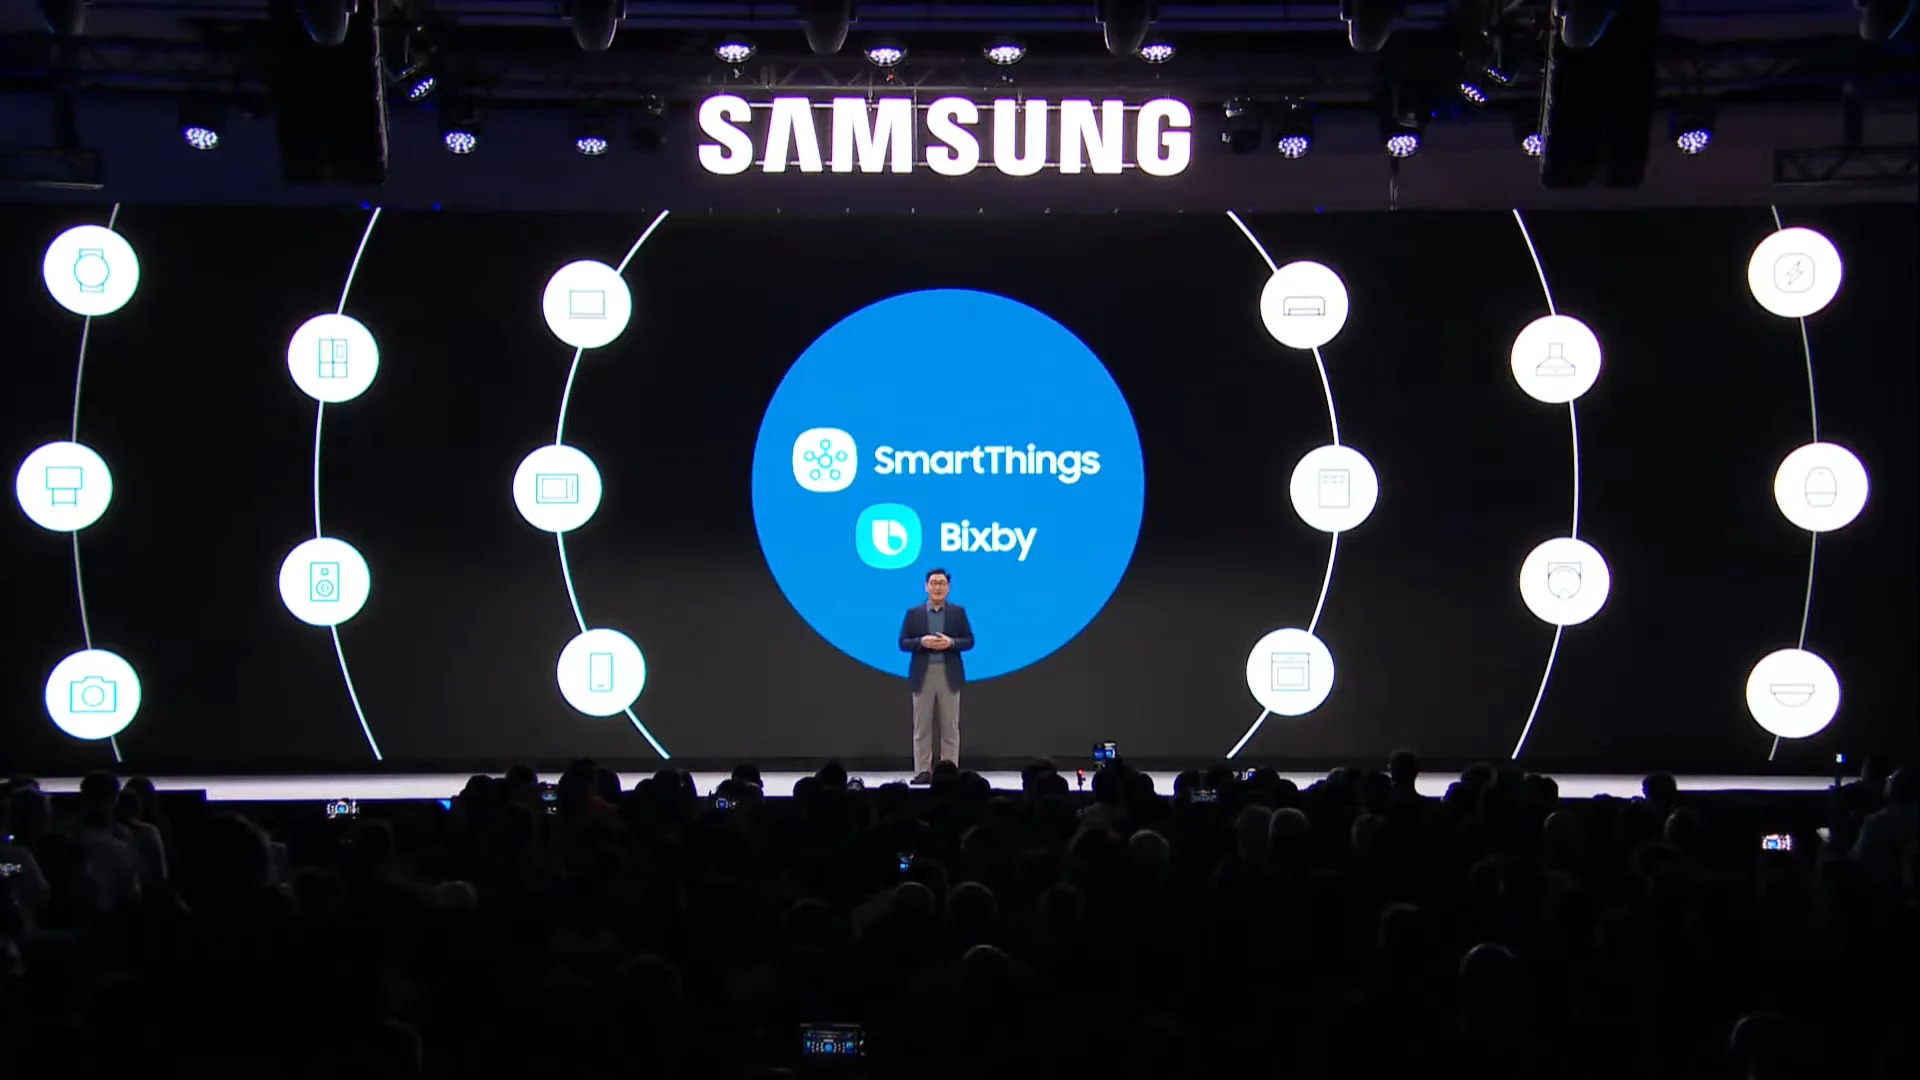 Samsung SmartThings otrzymuje aktualizację z nowym wyglądem i funkcjami